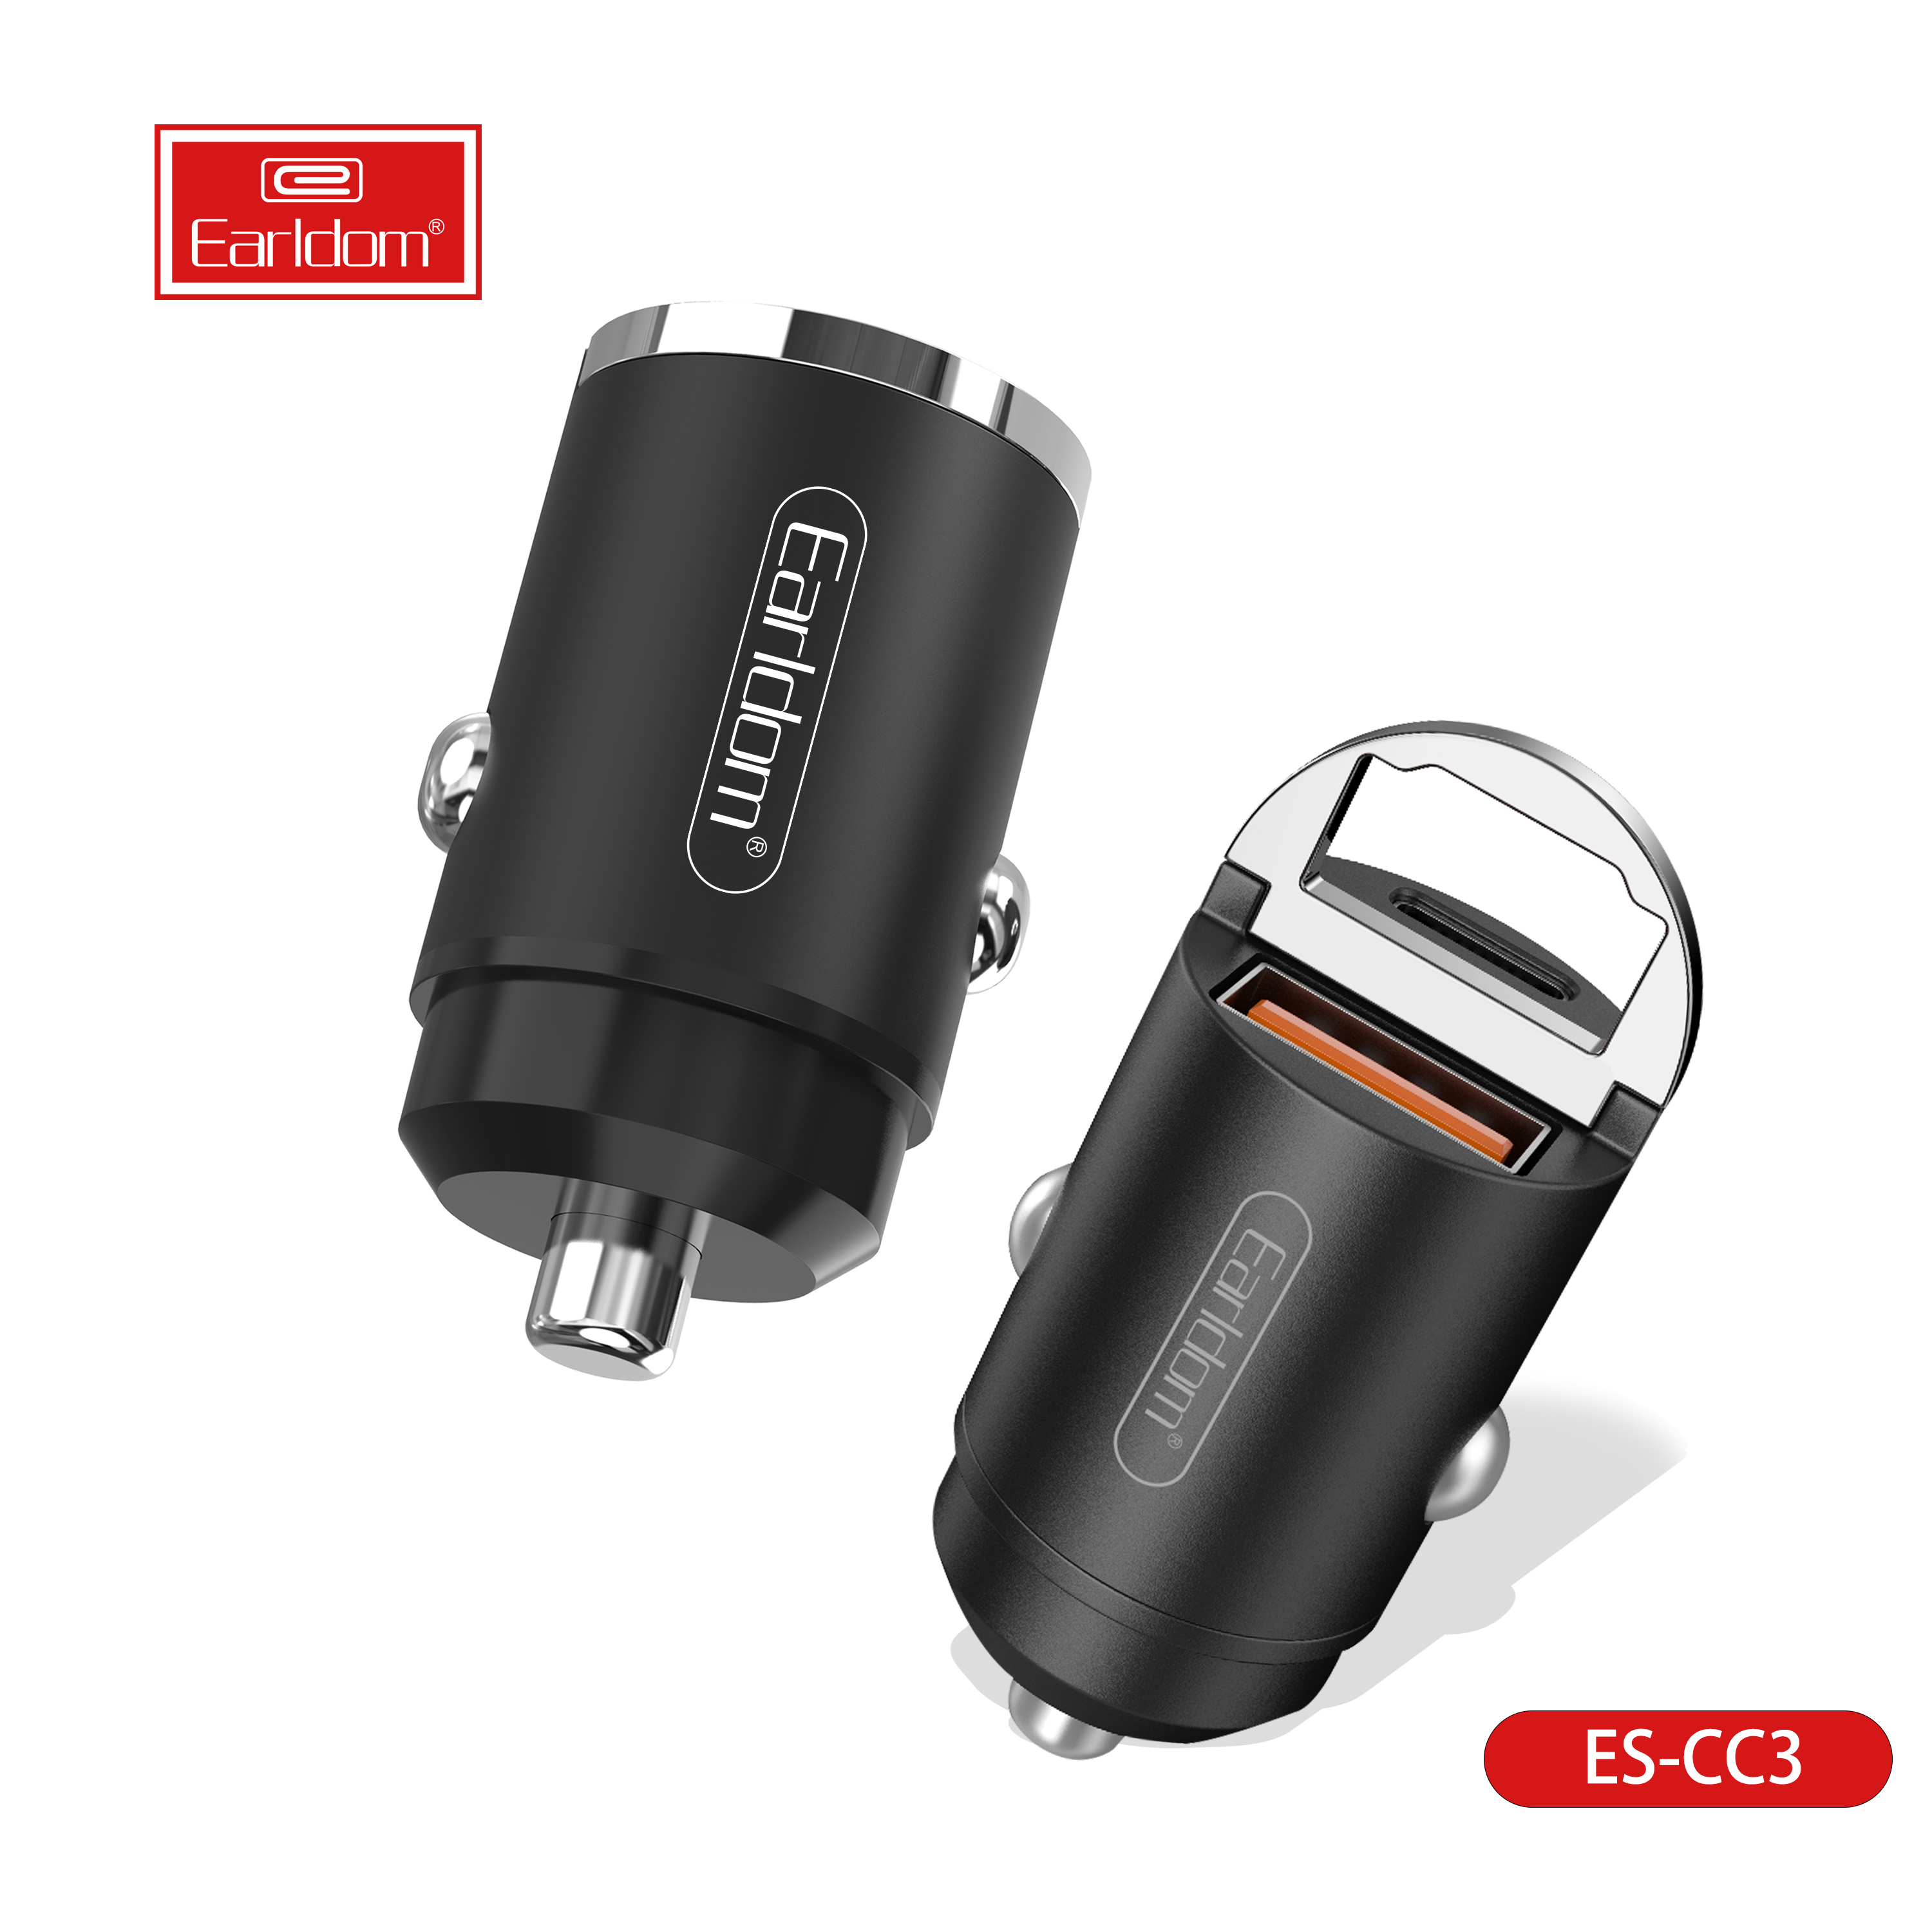 Earldom USB C Araç Şarj Süper Mini Hızlı USB Araç Şarj Pd&QC 3.0 Çift Bağlantı Noktası Araba Adaptörü Iphone 12/12 Pro / MAX / 12 Mini / iPhone 11 / Pro / MAX / XR / XS / MAX / 8, GALAXY S21 / 20/10 / 9